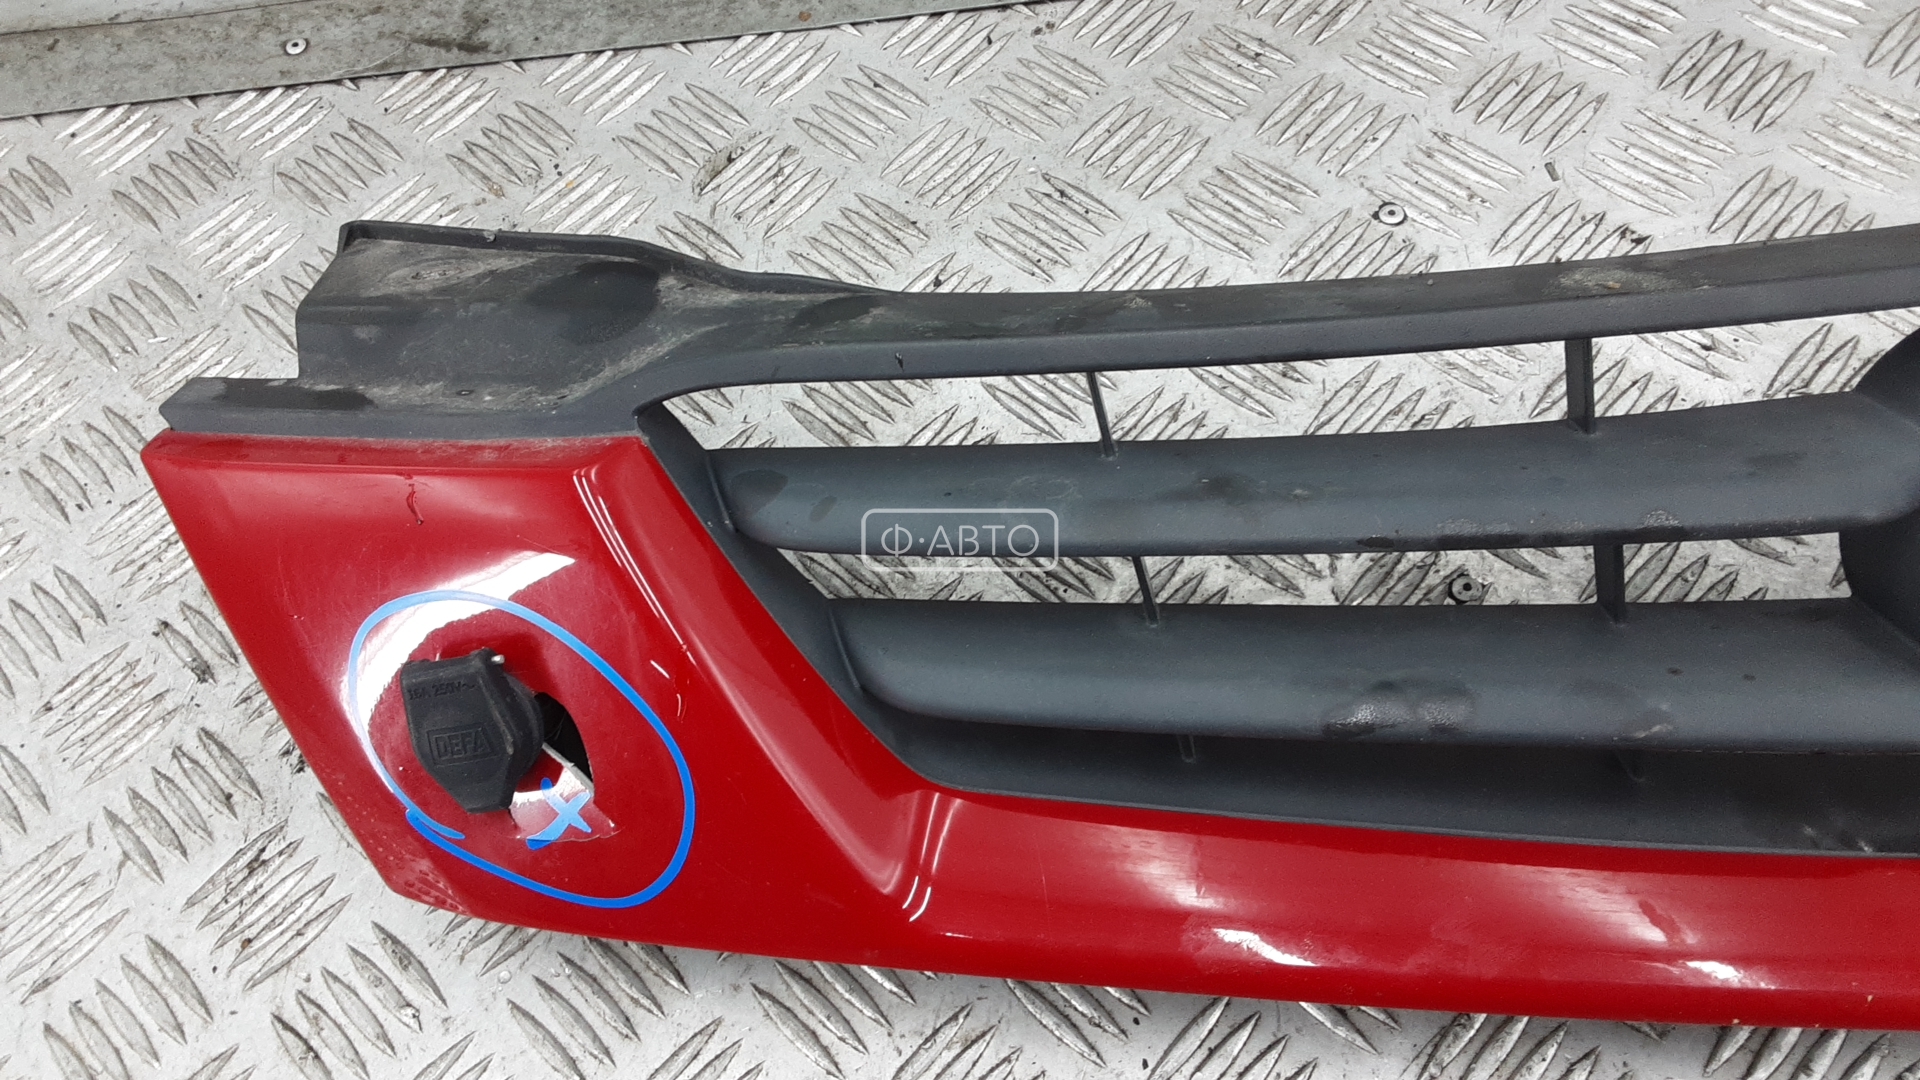 Решетка радиатора Mazda Demio 1 DW купить в Беларуси